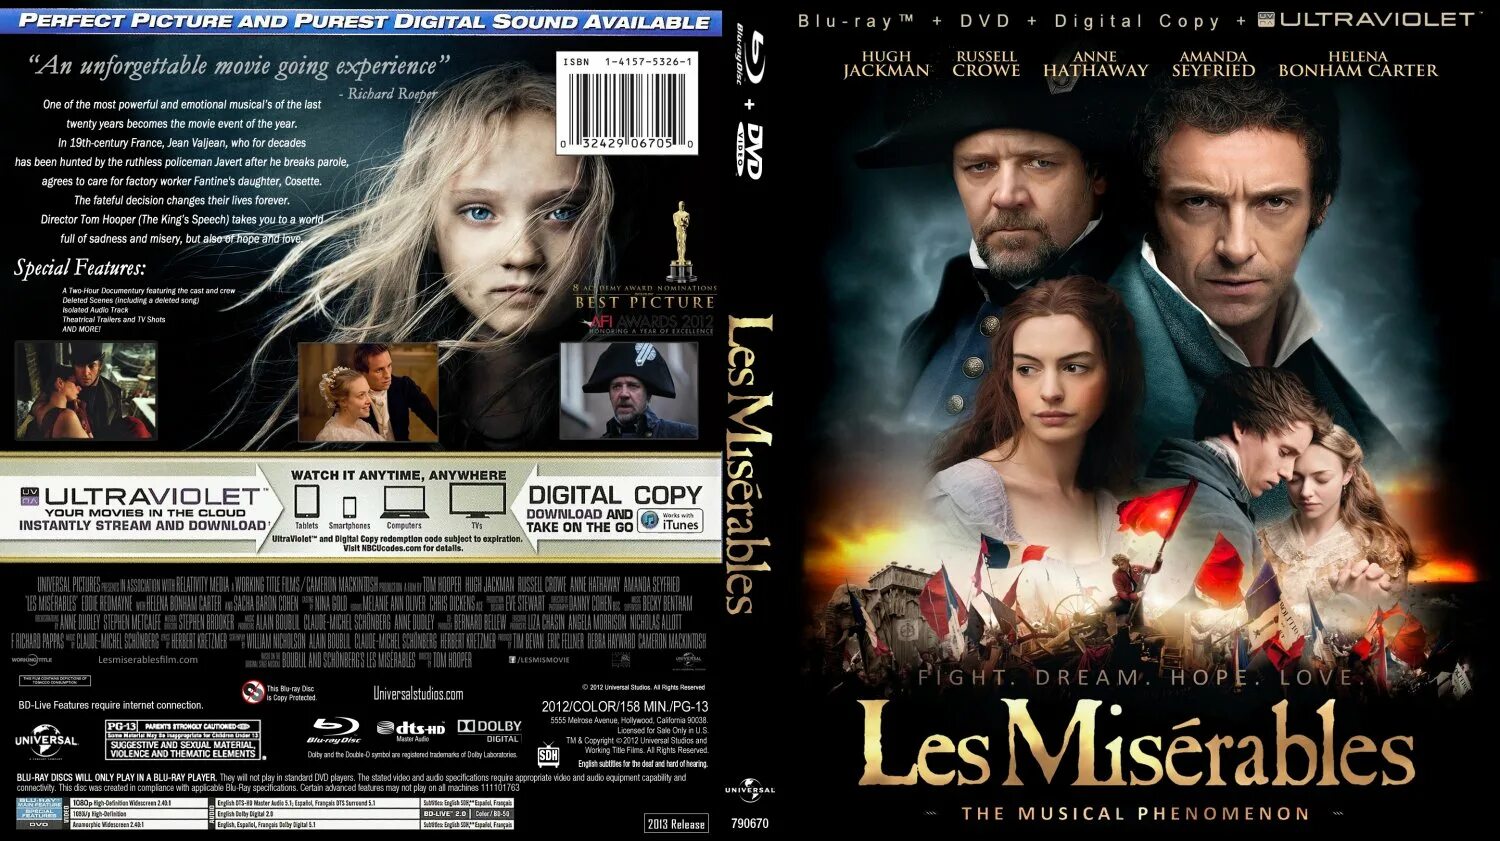 Les Miserables 2012 постеры. Отверженные 2012 Постер. Отверженные (les Misérables), 2012 постеры к фильму. Отверженные 2012 афиша. 2012 обложка